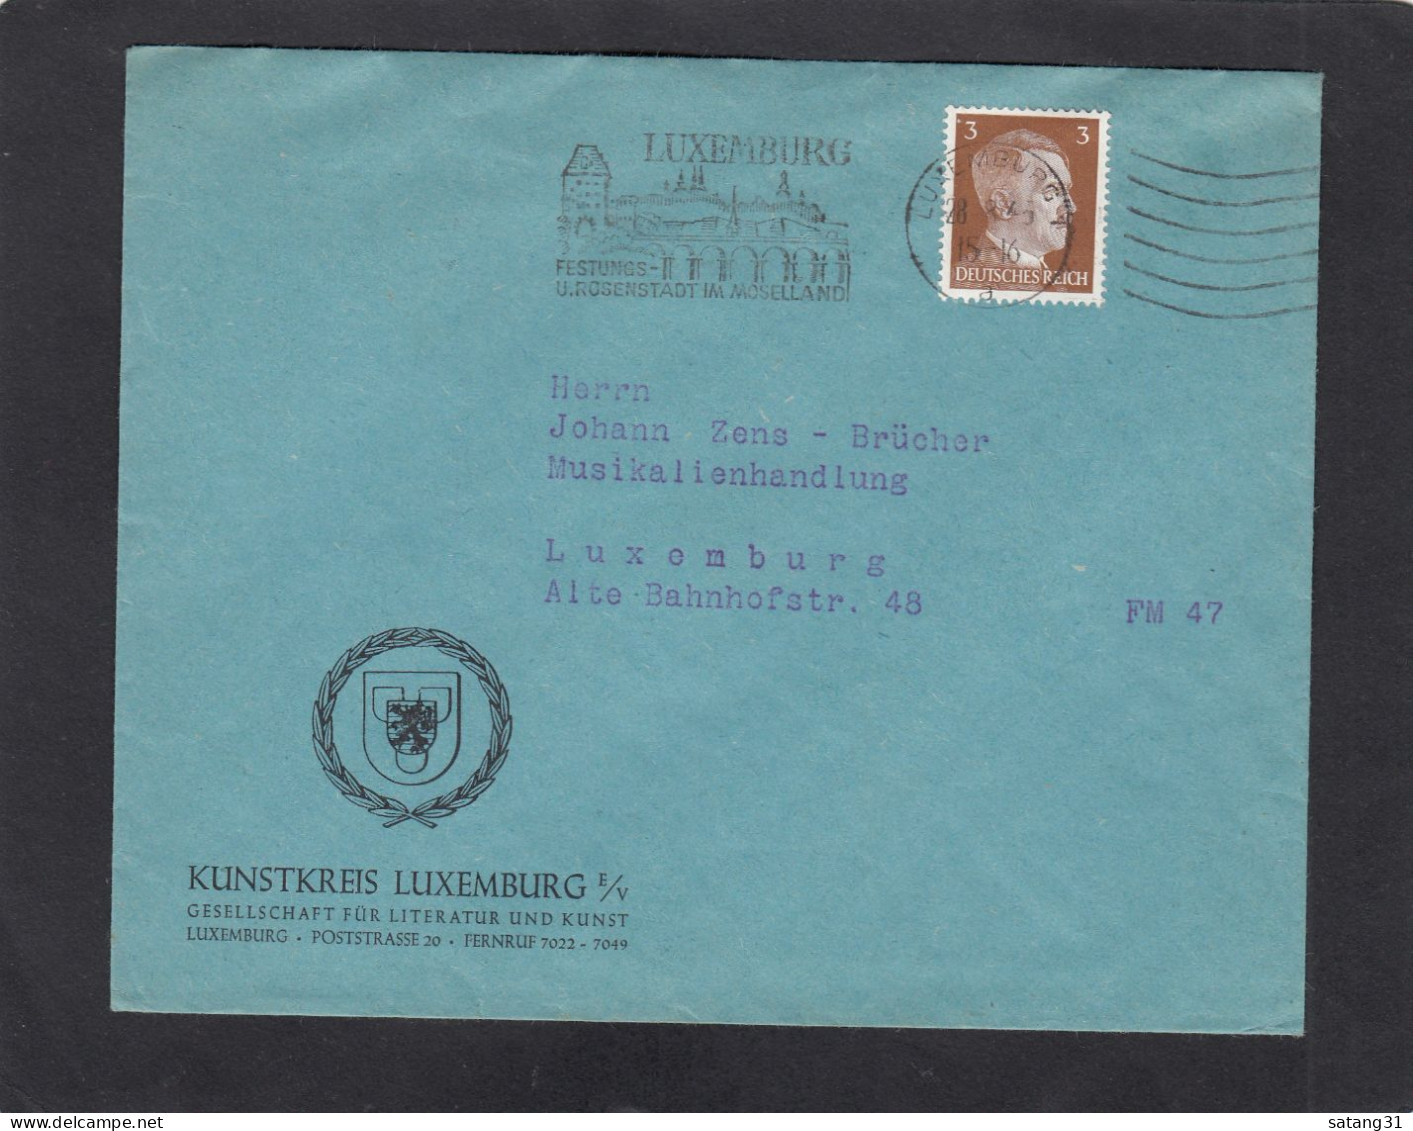 KUNSTKREIS LUXEMBURG,GESELLSCHAFT FÜR LITTERATUR UND KUNST,LUXEMBURG. - 1940-1944 Occupazione Tedesca